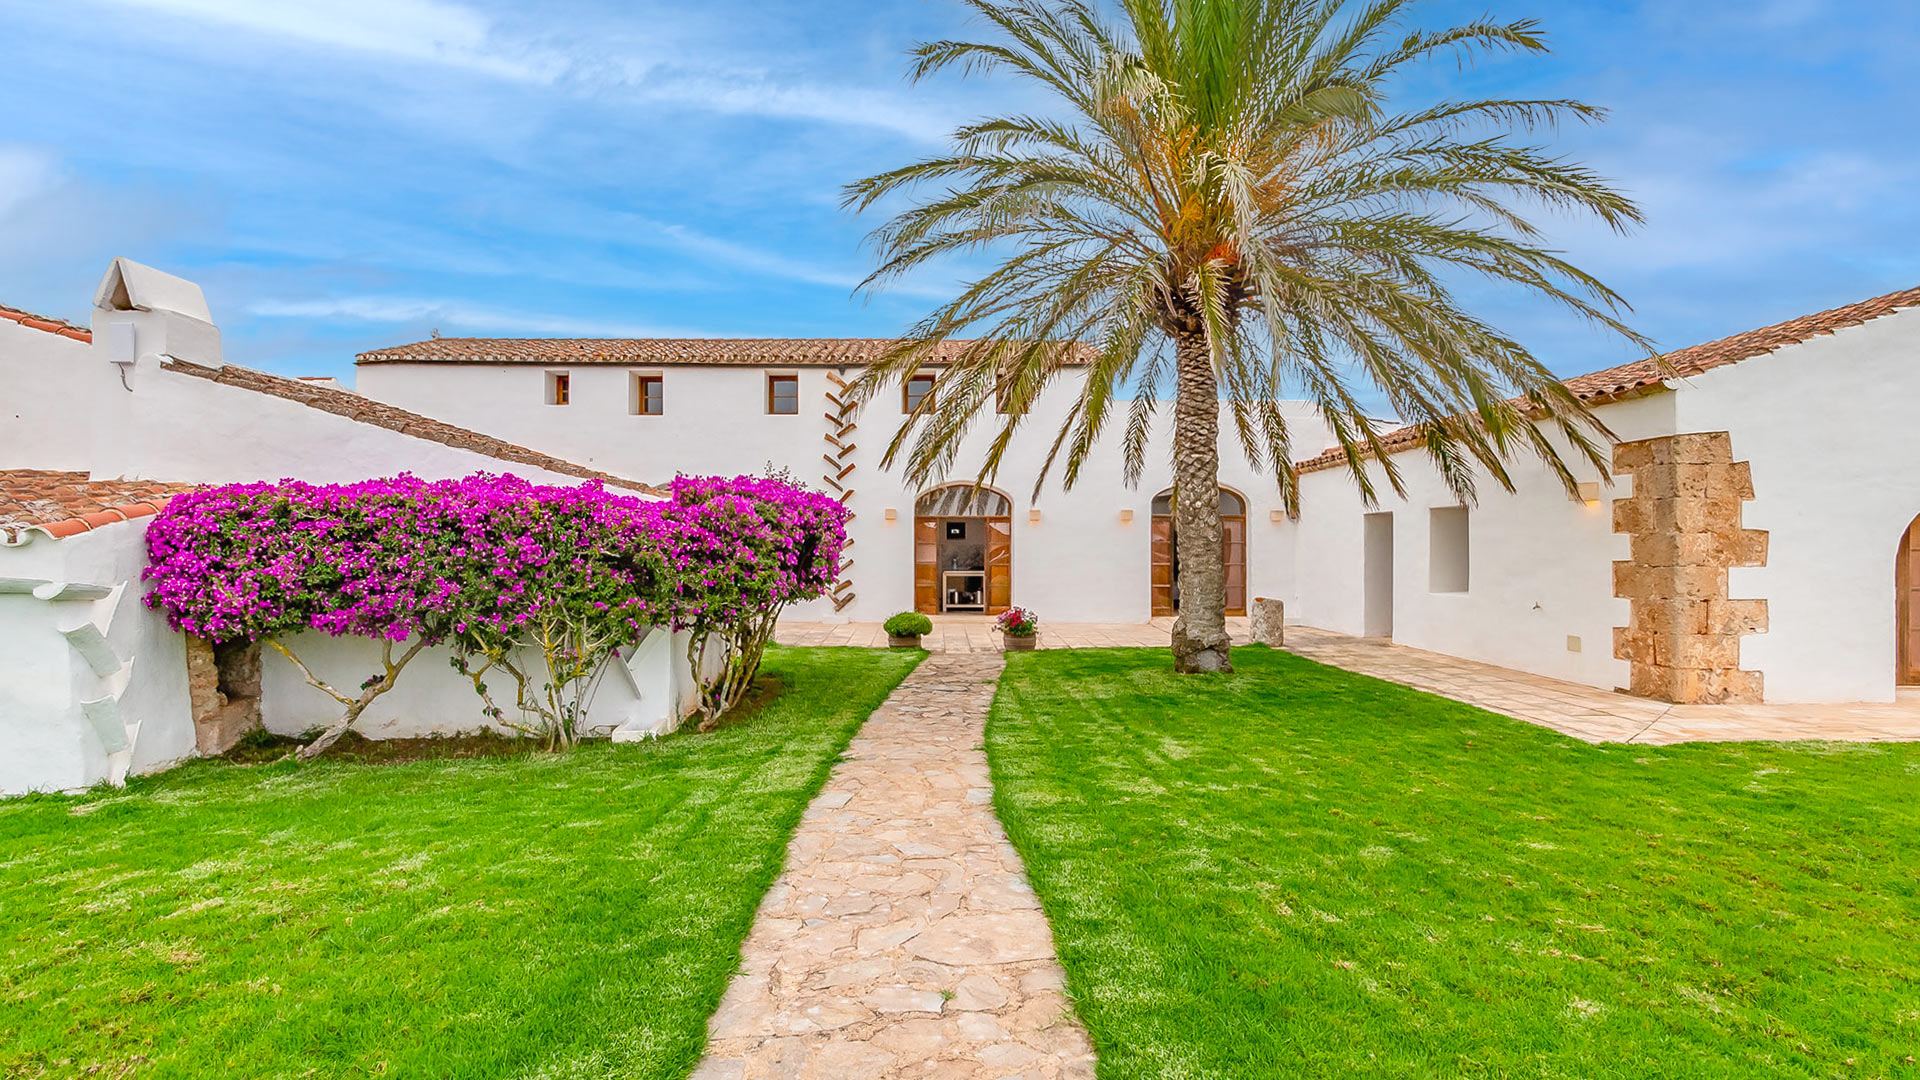 Villa Villa Benedicta, Rental in Menorca